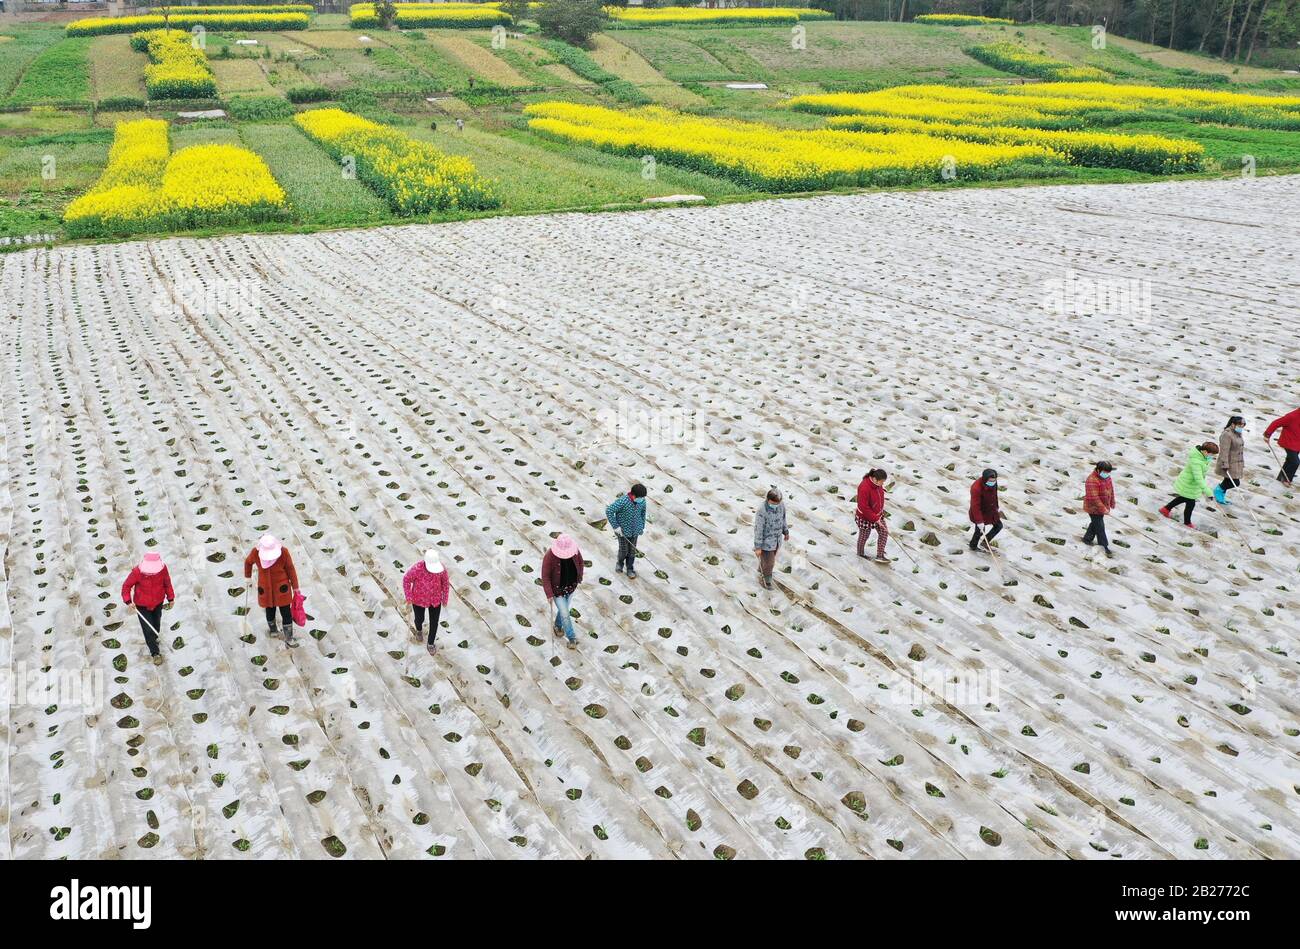 Suining. 1st Mar, 2020. Foto aerea scattata il 1 marzo 2020 mostra gli agricoltori che lavorano nel campo al Villaggio di Shunjiang della Citta' di Hongjiang, la Contea di Pengxi, la Citta' di Suining, la Provincia di Sichuan della Cina sudoccidentale. Credito: Zhong Min/Xinhua/Alamy Live News Foto Stock